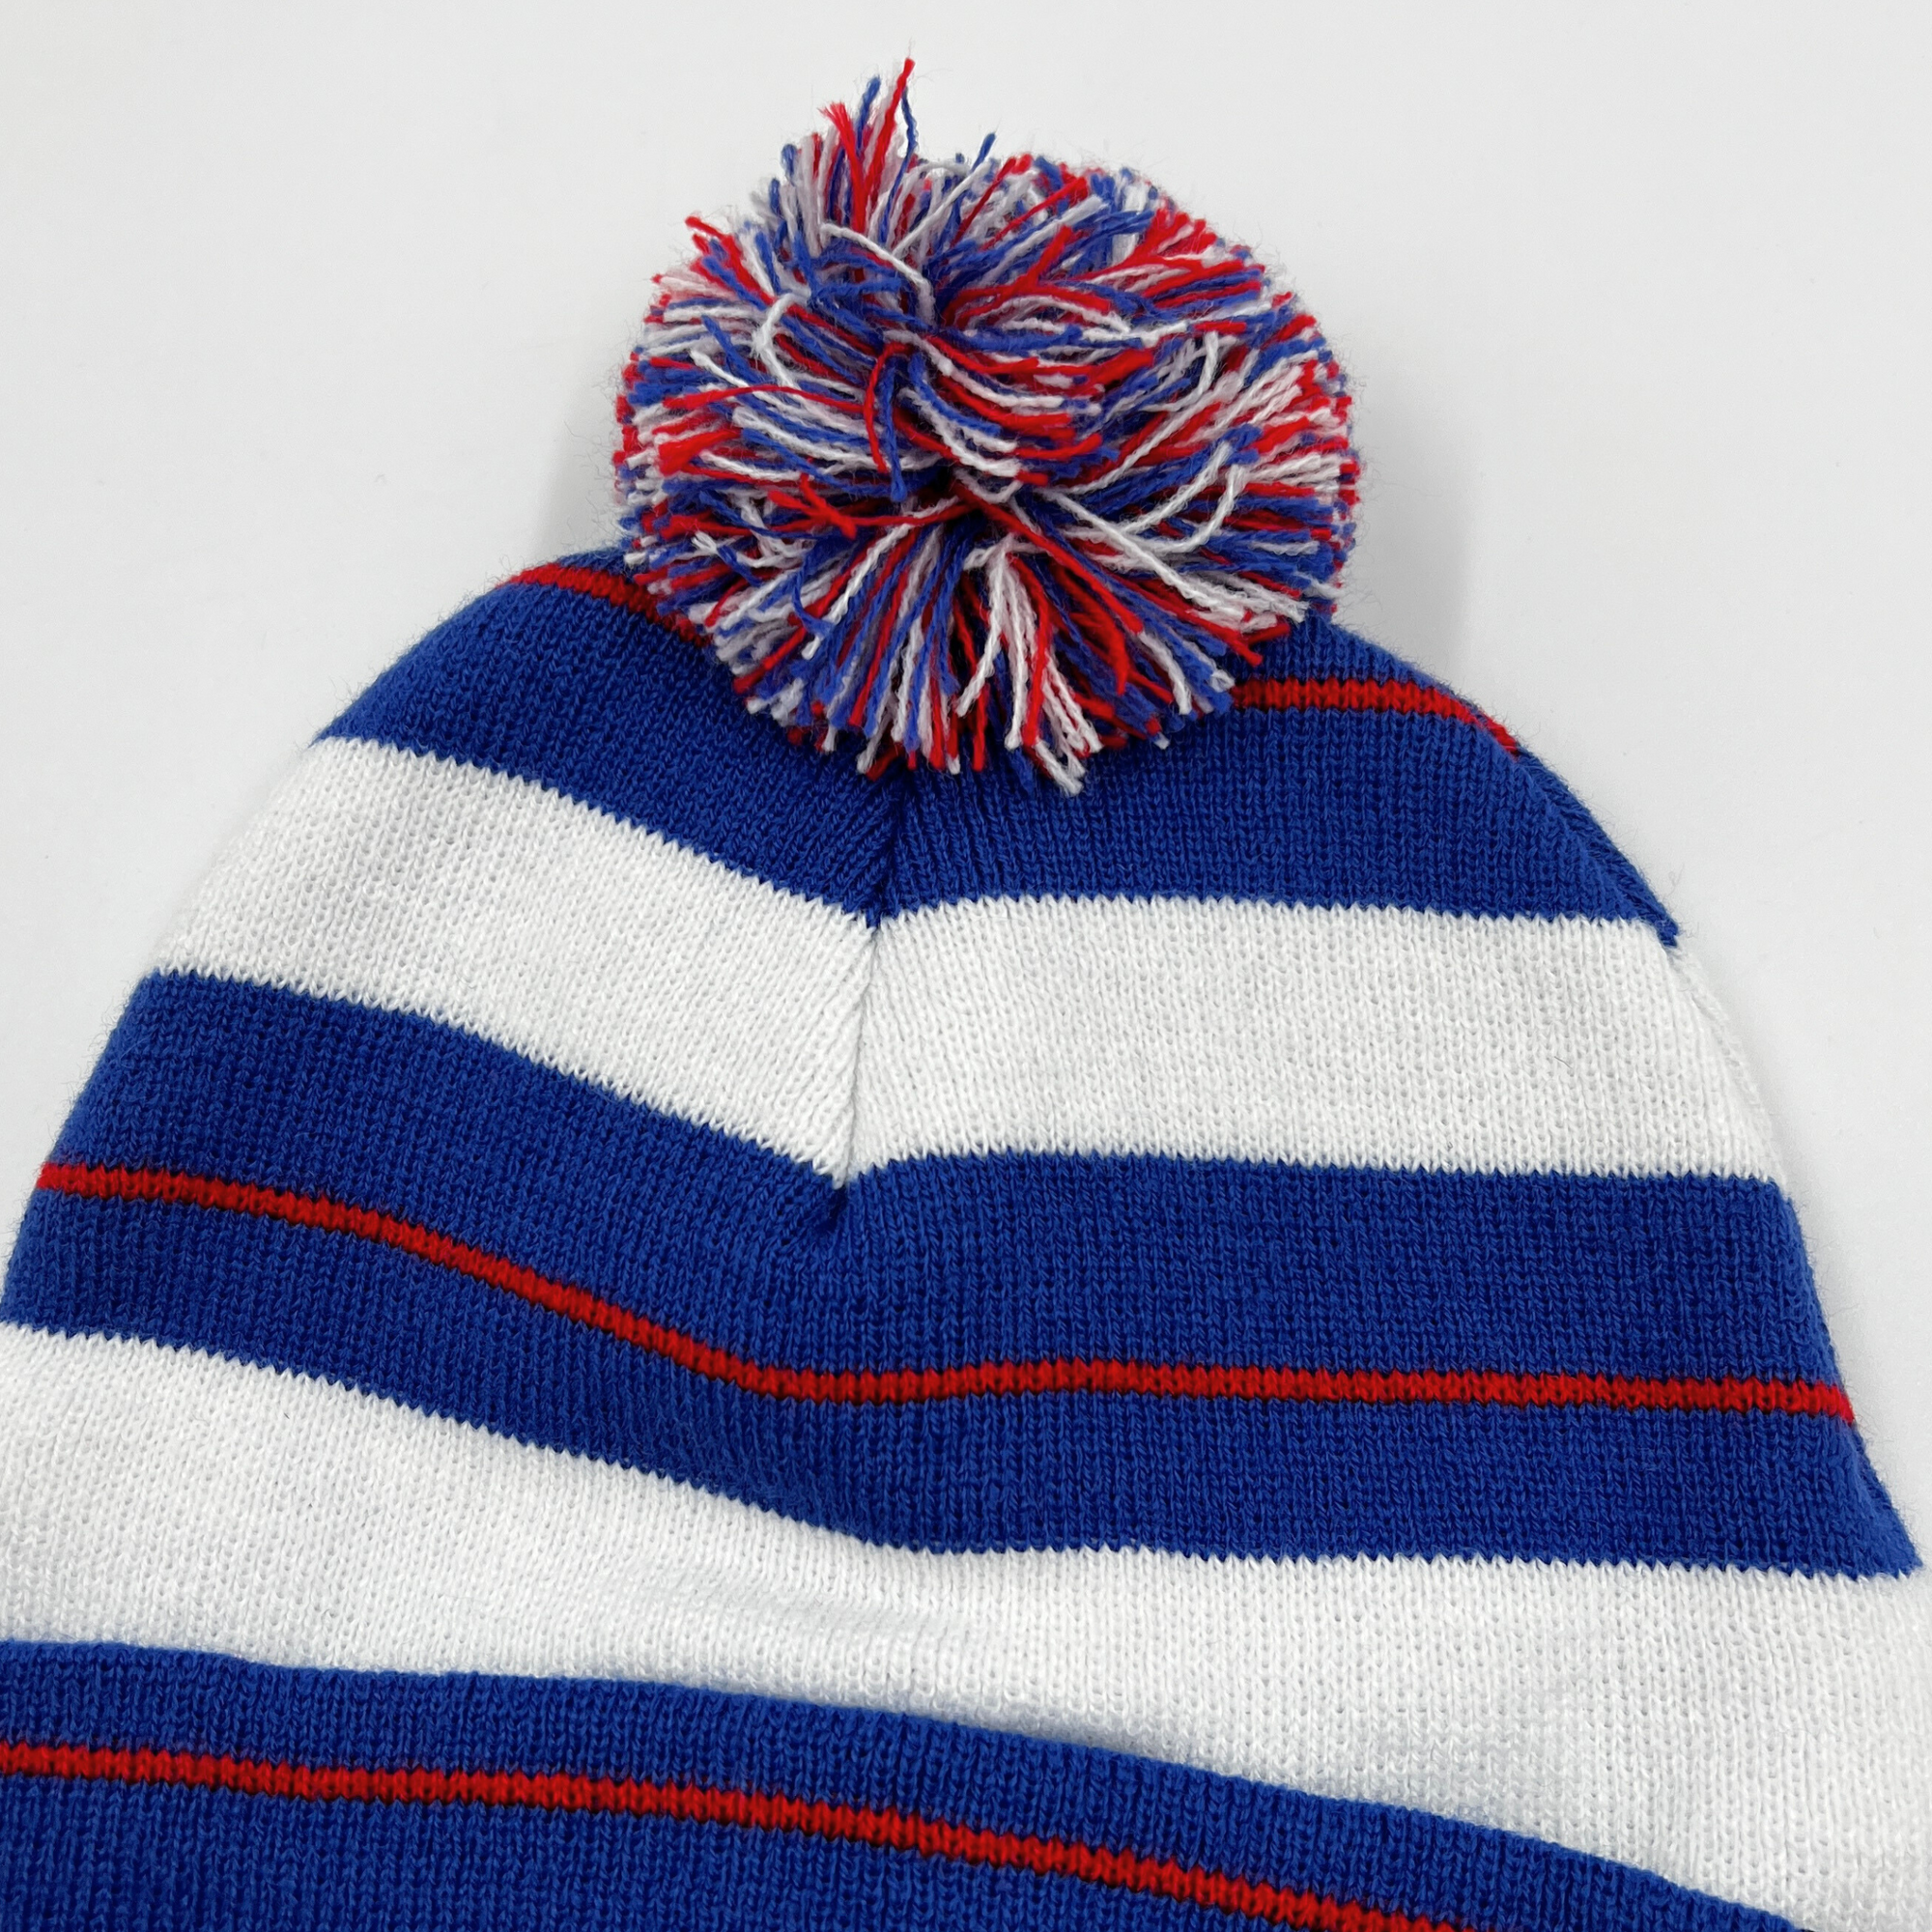 &#39;47 Brand Buffalo Bills Sonic Blue Power Line Knit Winter Hat